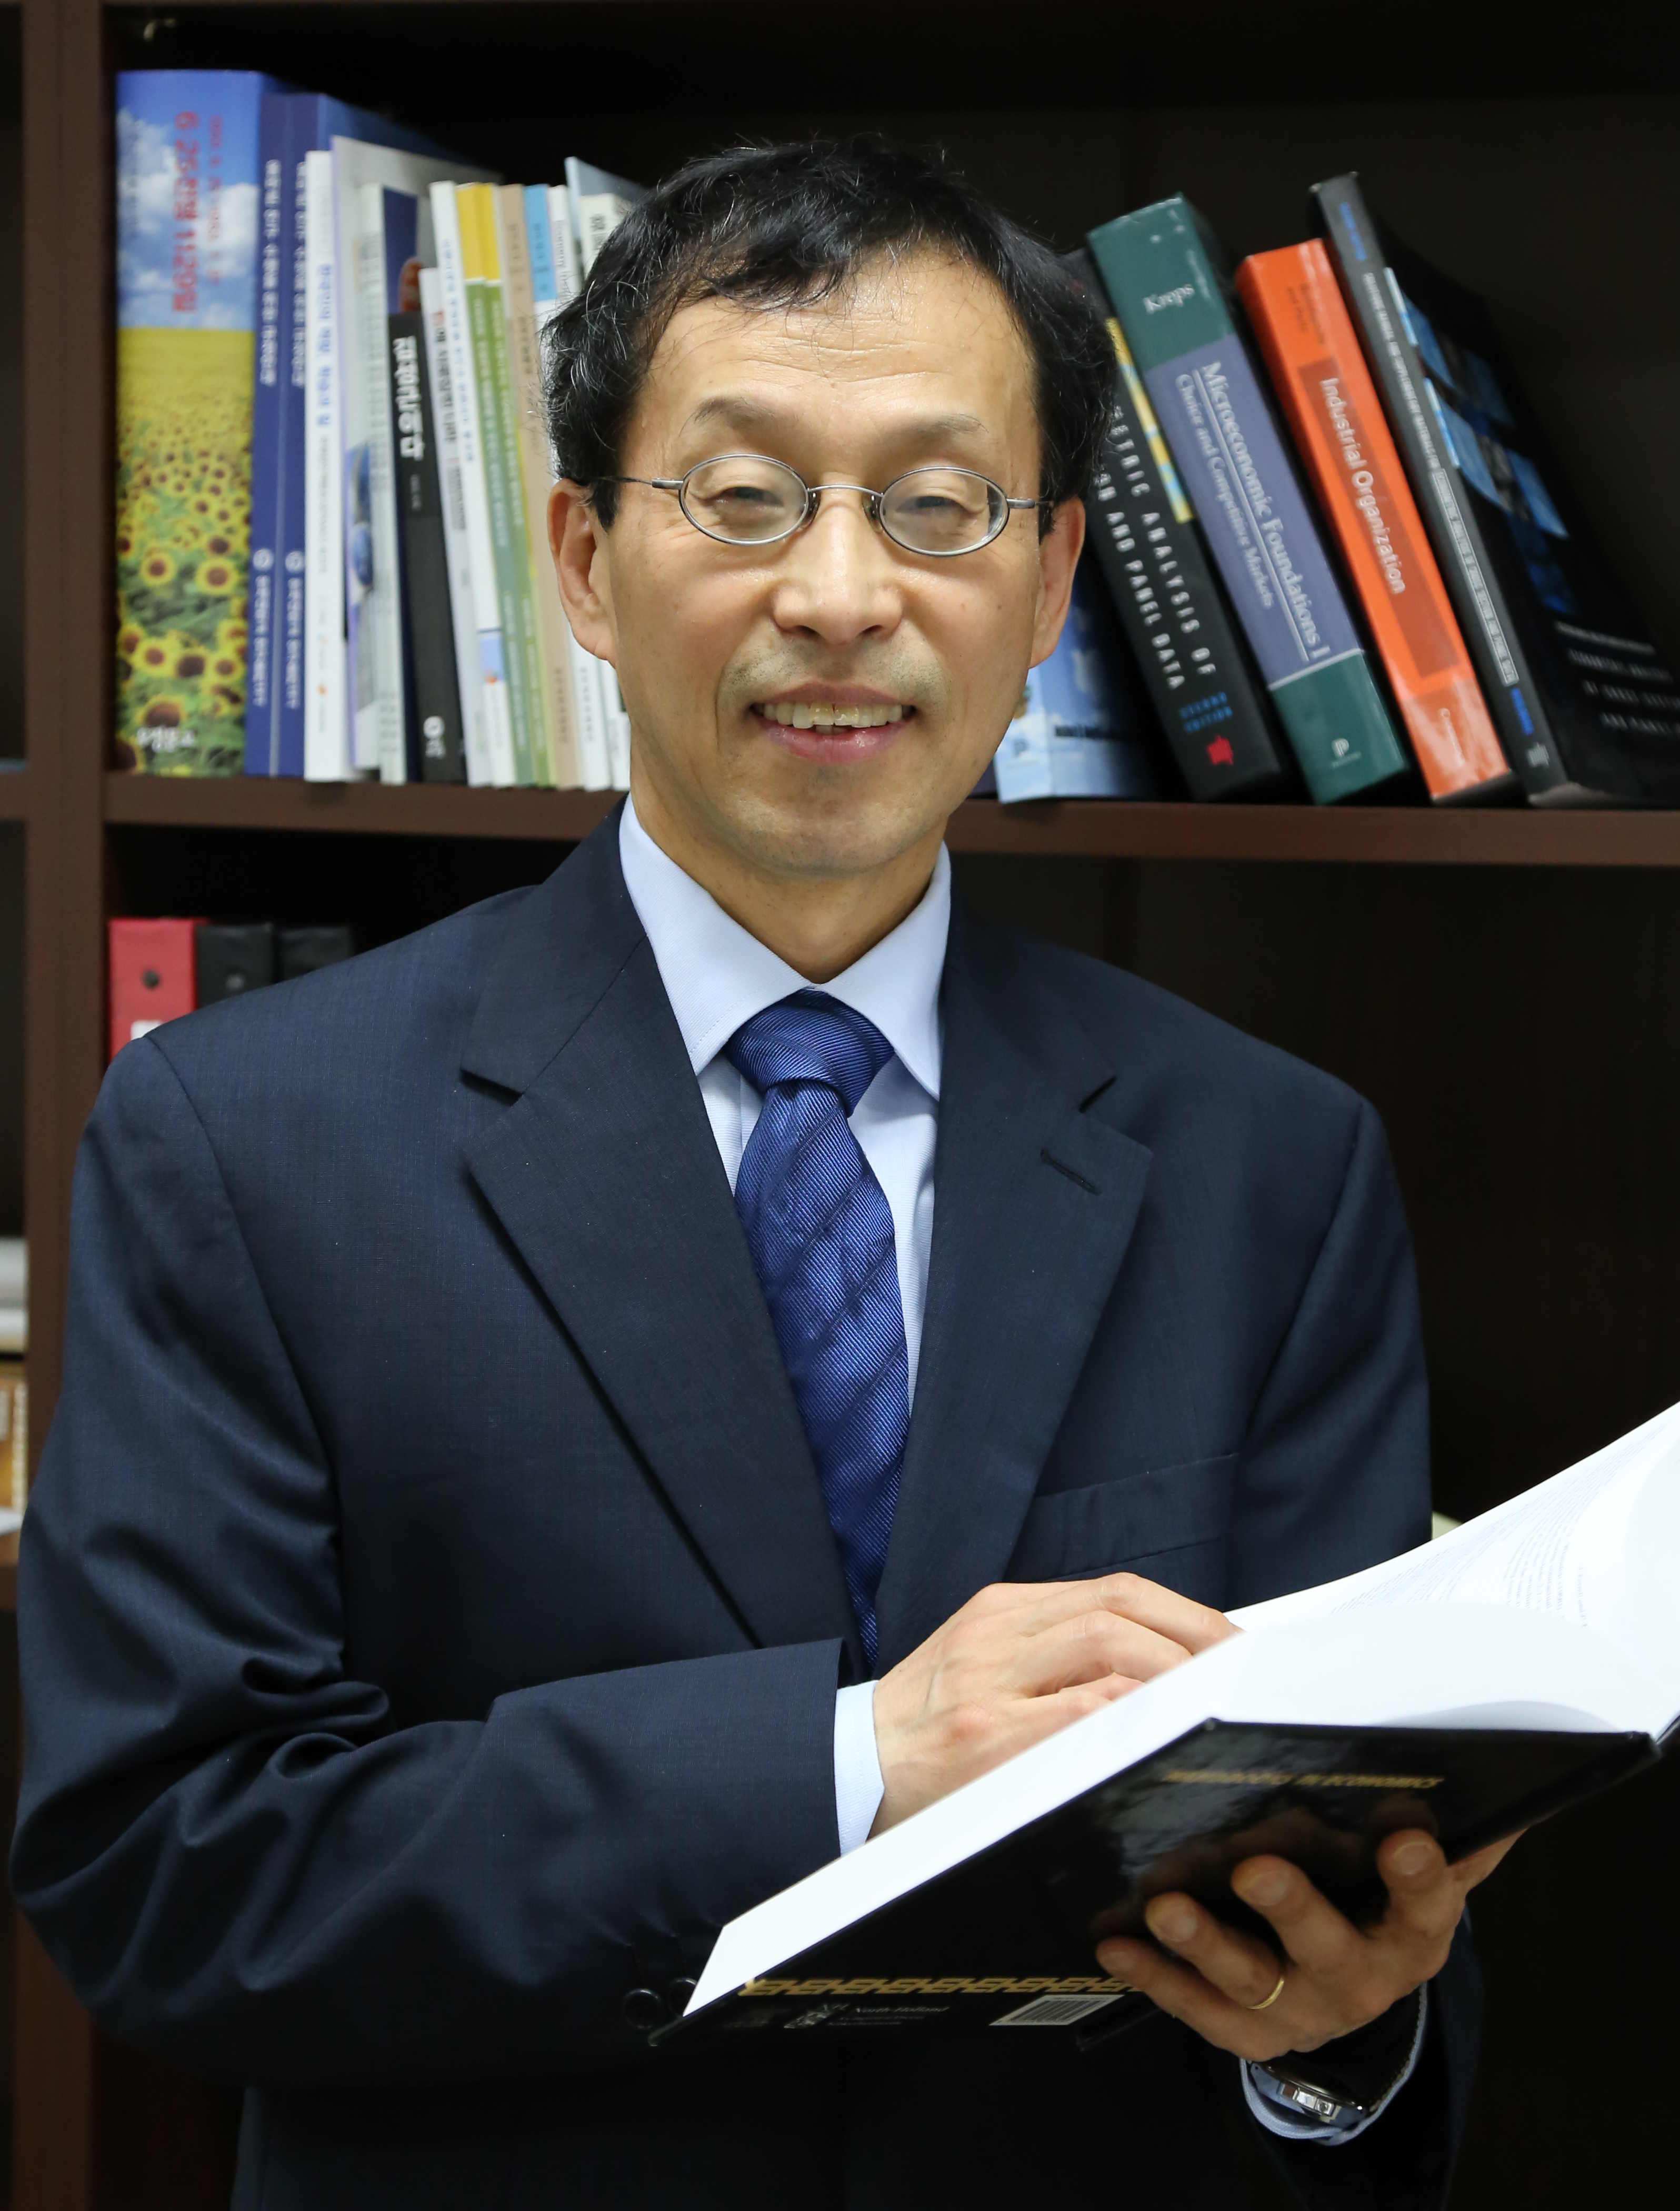 Jay Pil Choi